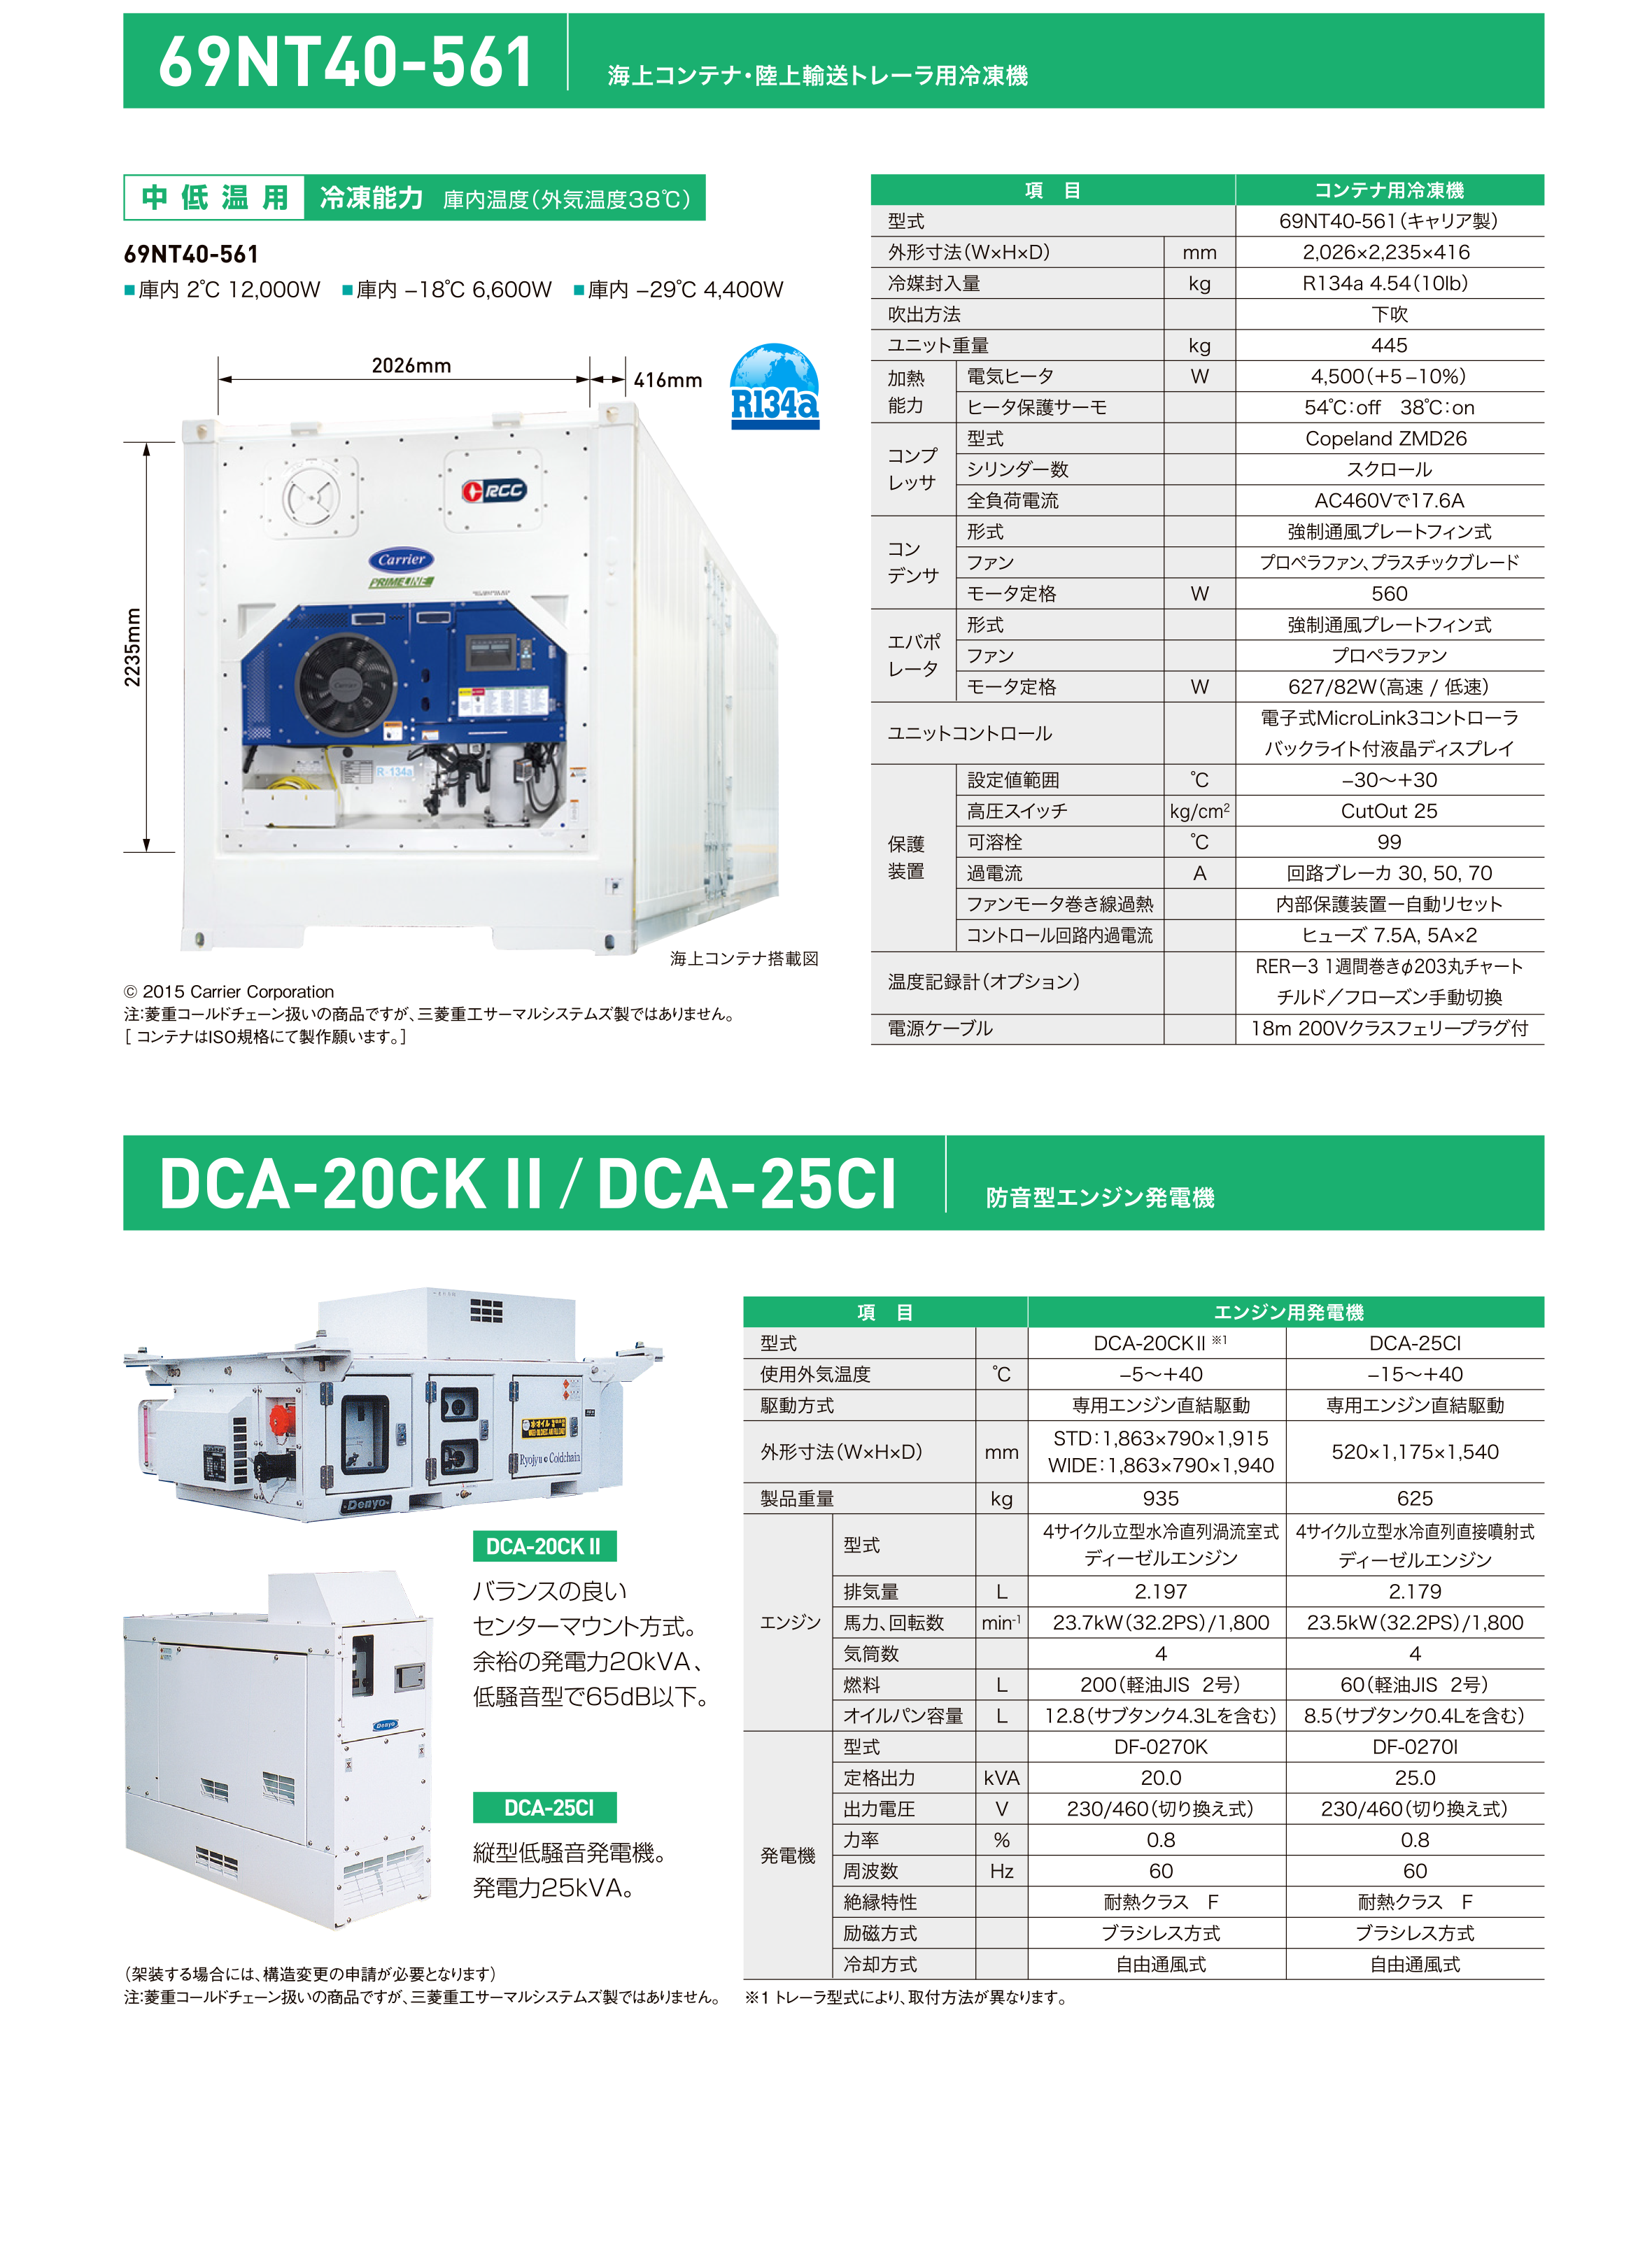 Product | 海上コンテナ・陸上輸送トレーラ用冷凍機 | 69nt40-561, dca-20ckII, dca-25cl